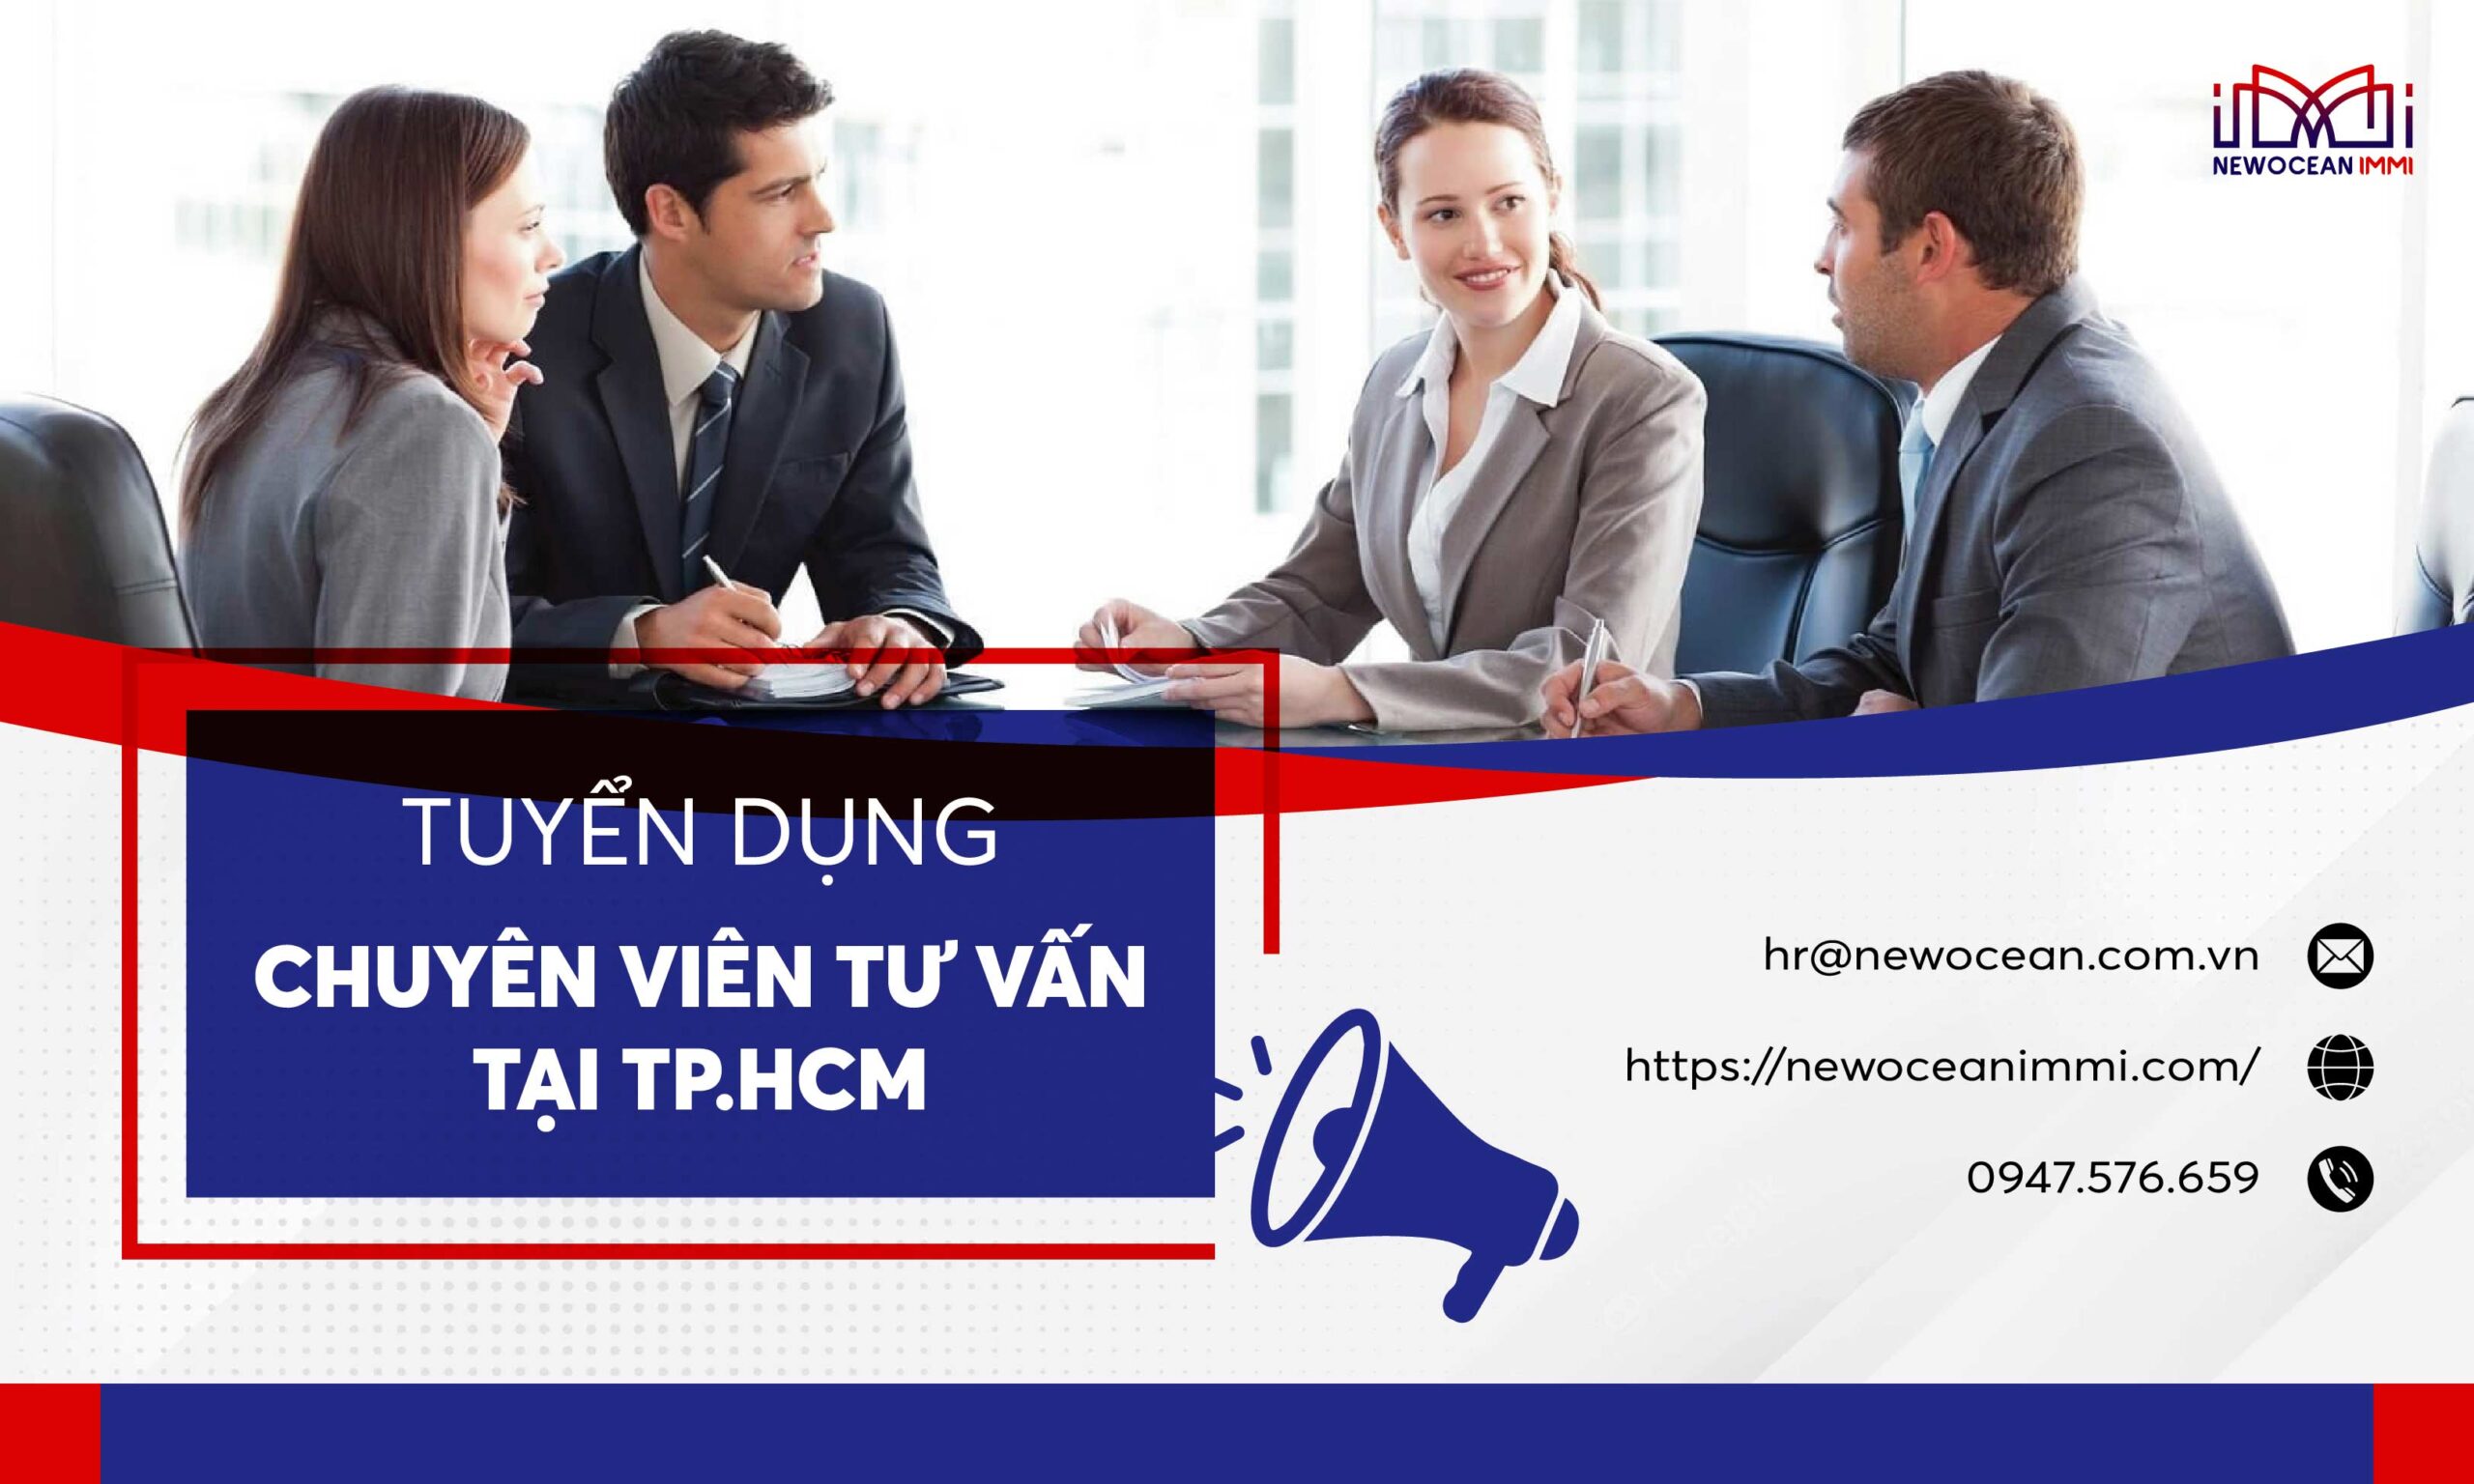 Thông báo tuyển dụng chuyên viên tư vấn TP.HCM